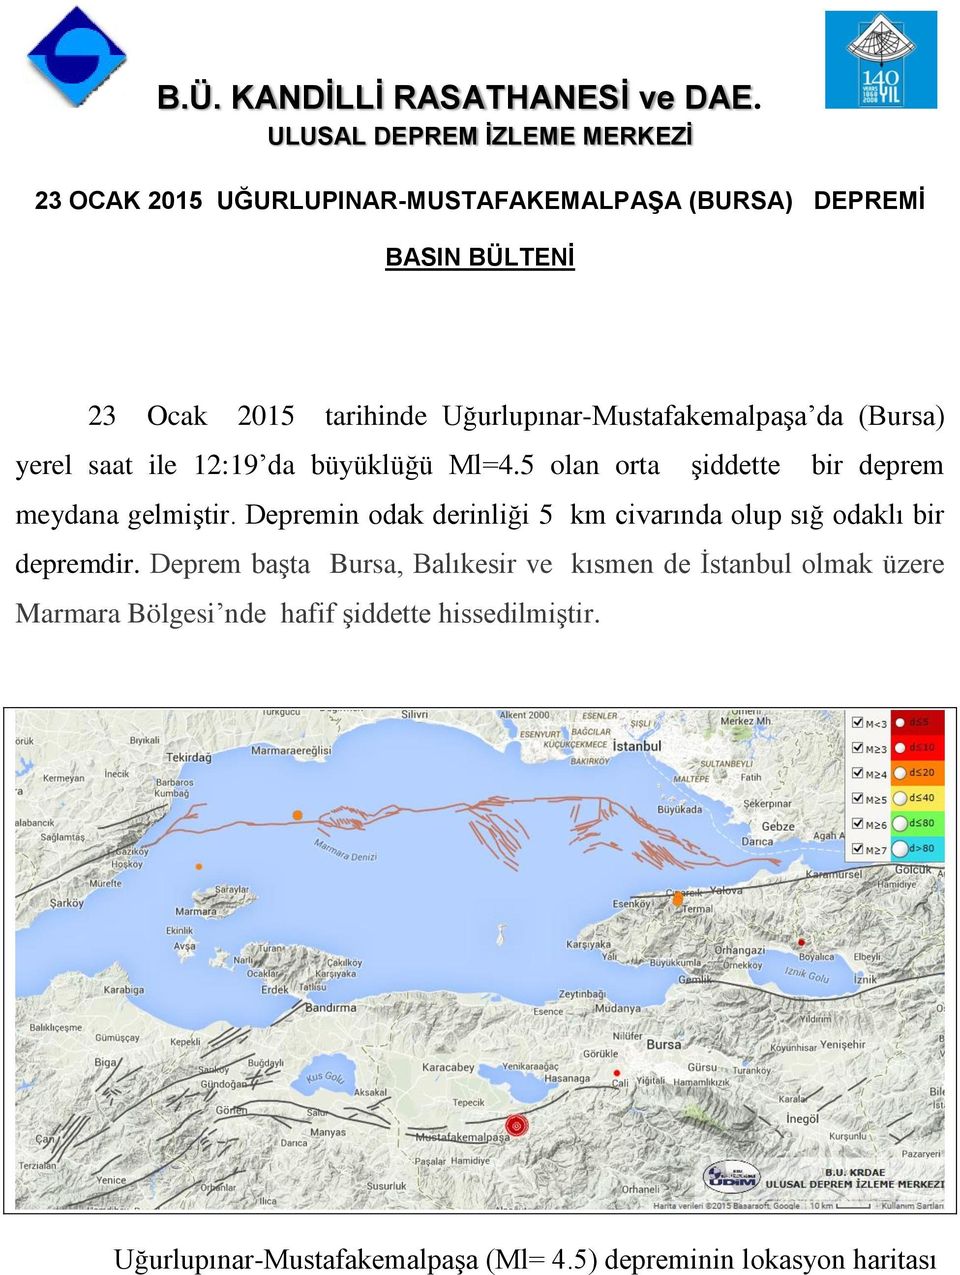 Uğurlupınar-Mustafakemalpaşa da (Bursa) yerel saat ile 12:19 da büyüklüğü Ml=4.5 olan orta şiddette bir deprem meydana gelmiştir.